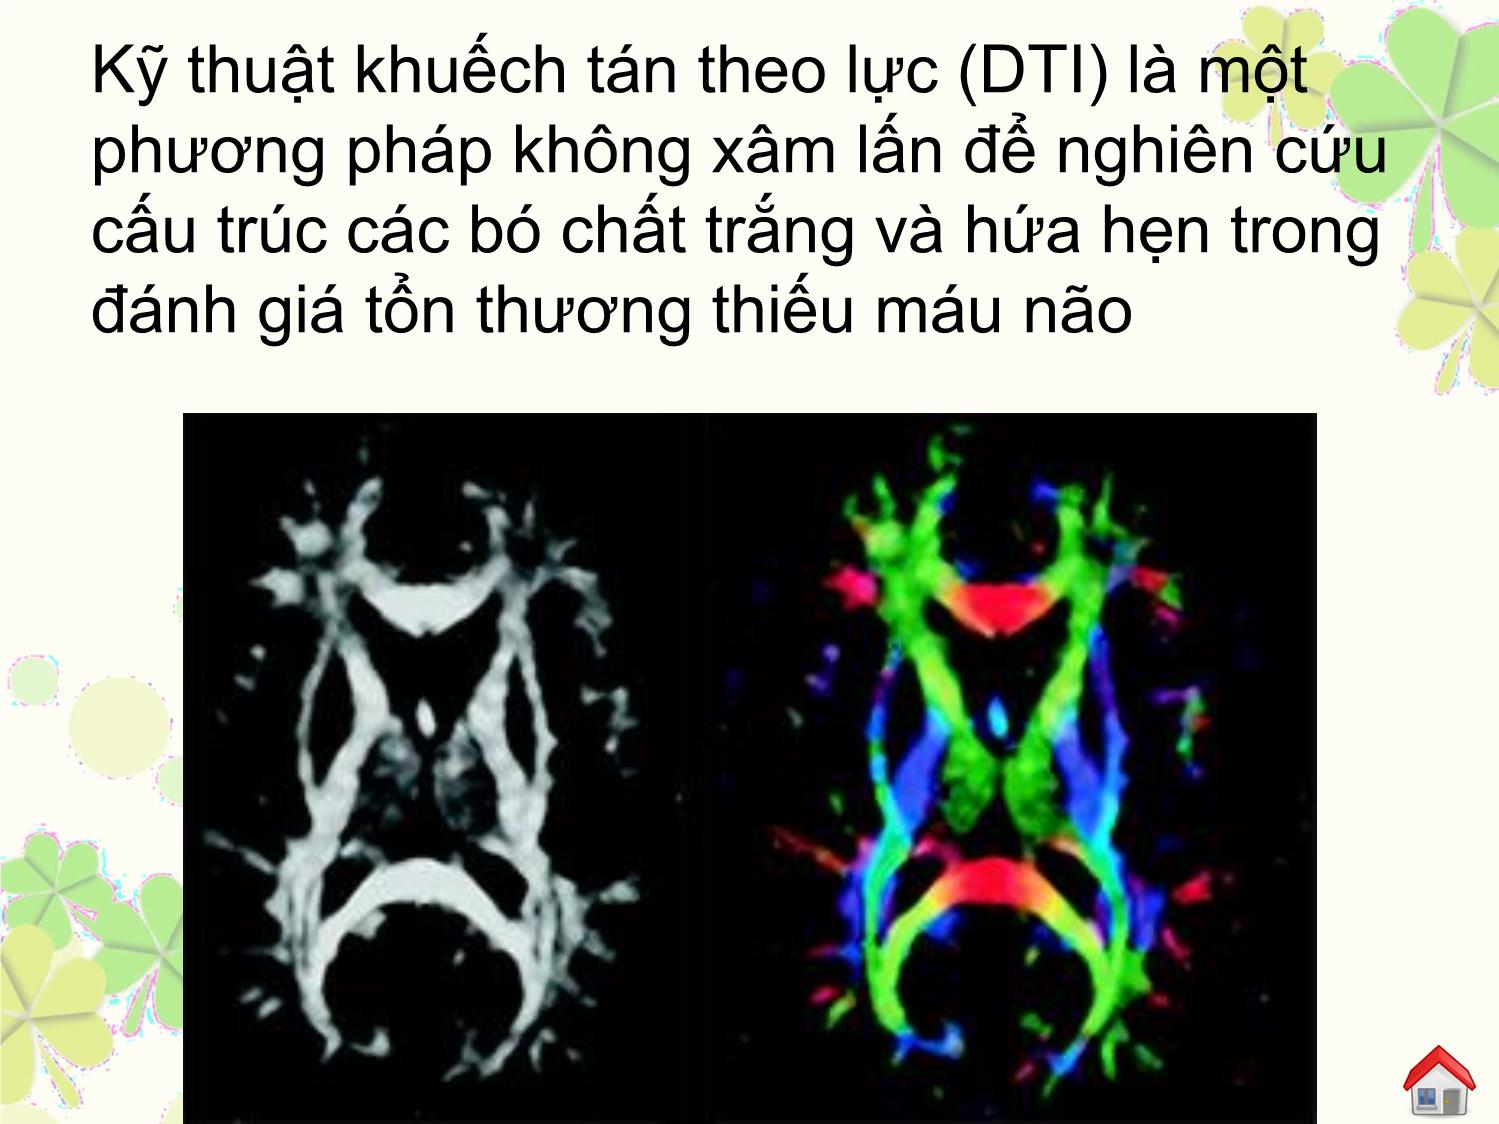 Đặc điểm hình ảnh bó tháp trên cộng hưởng từ khuếch tán theo hướng (dti) của người bình thường và thay đổi trong tổn thương nhồi máu não cấp trang 6